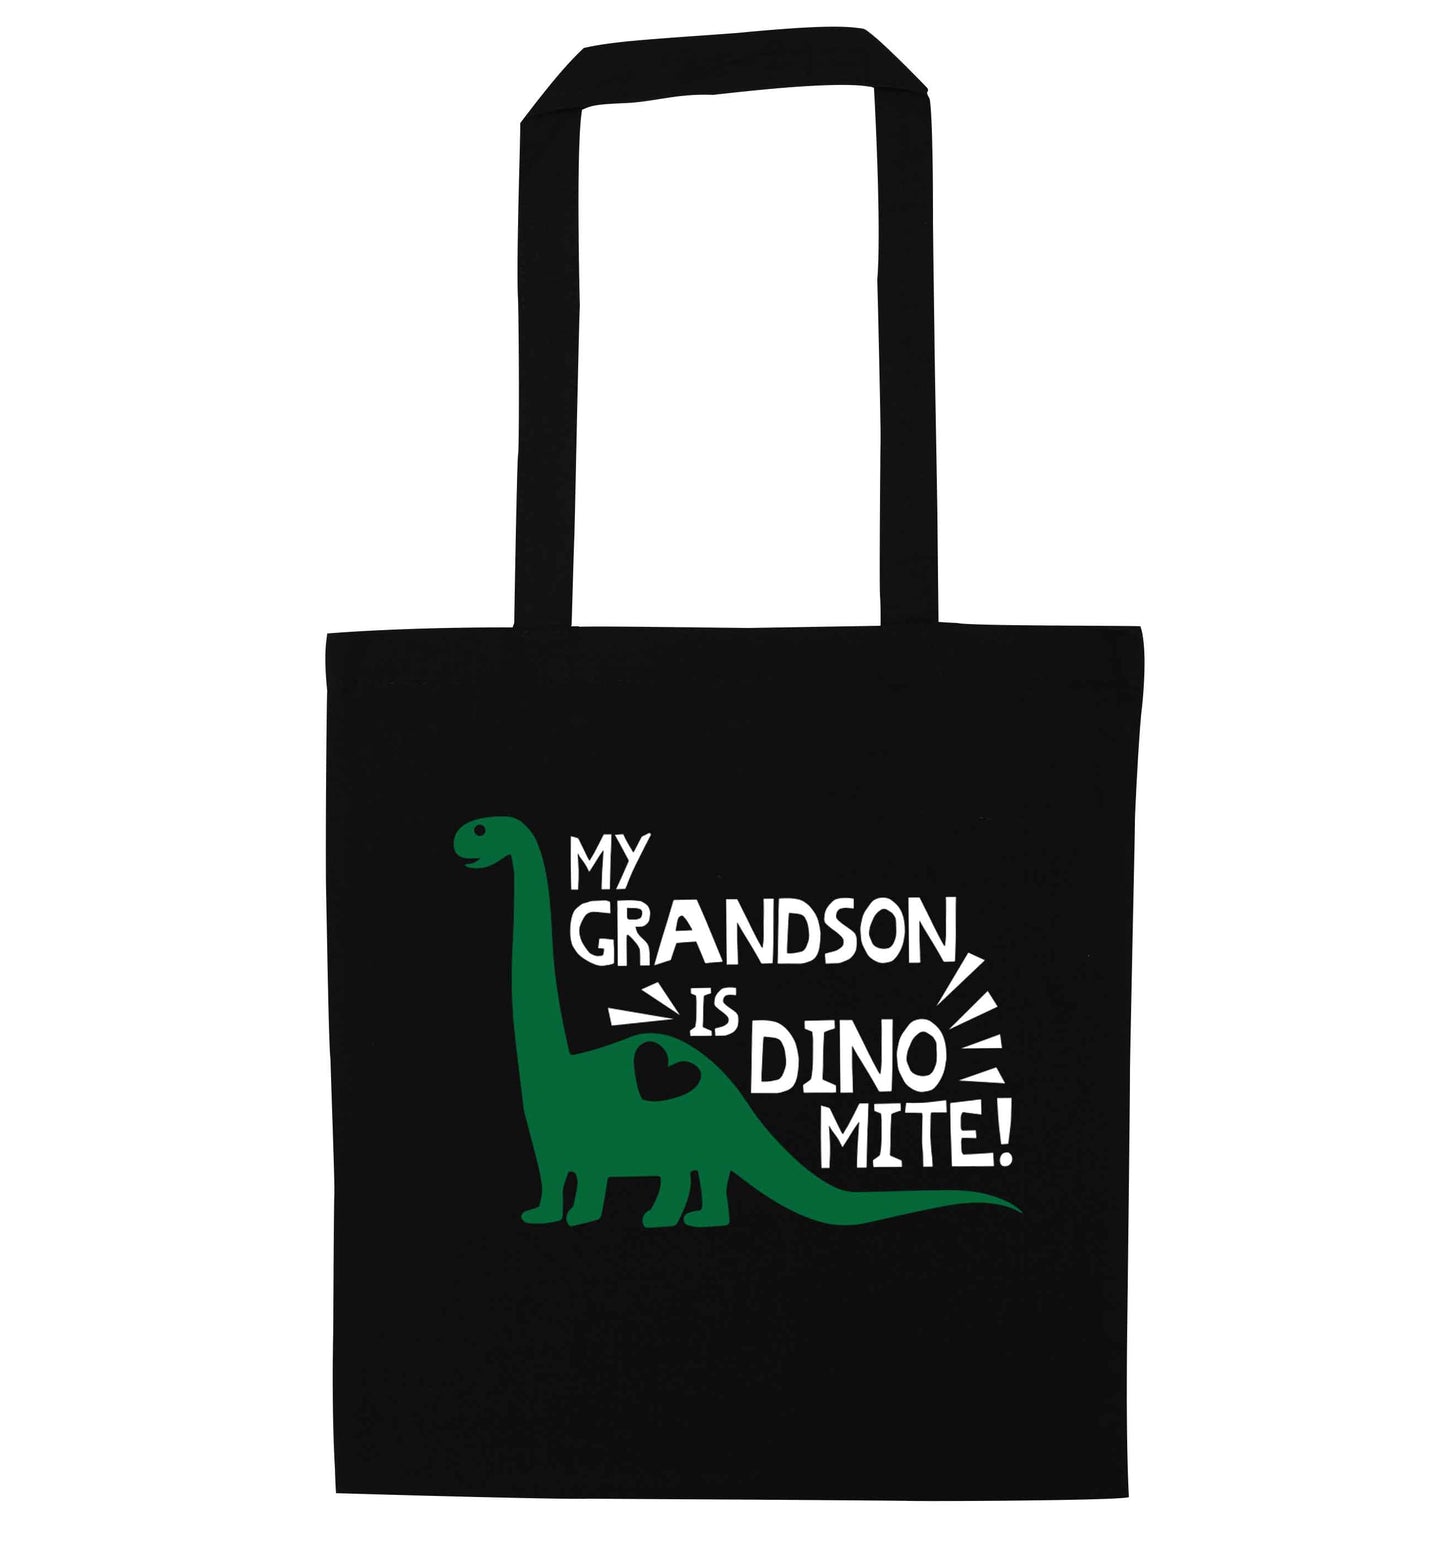 My grandson is dinomite! black tote bag